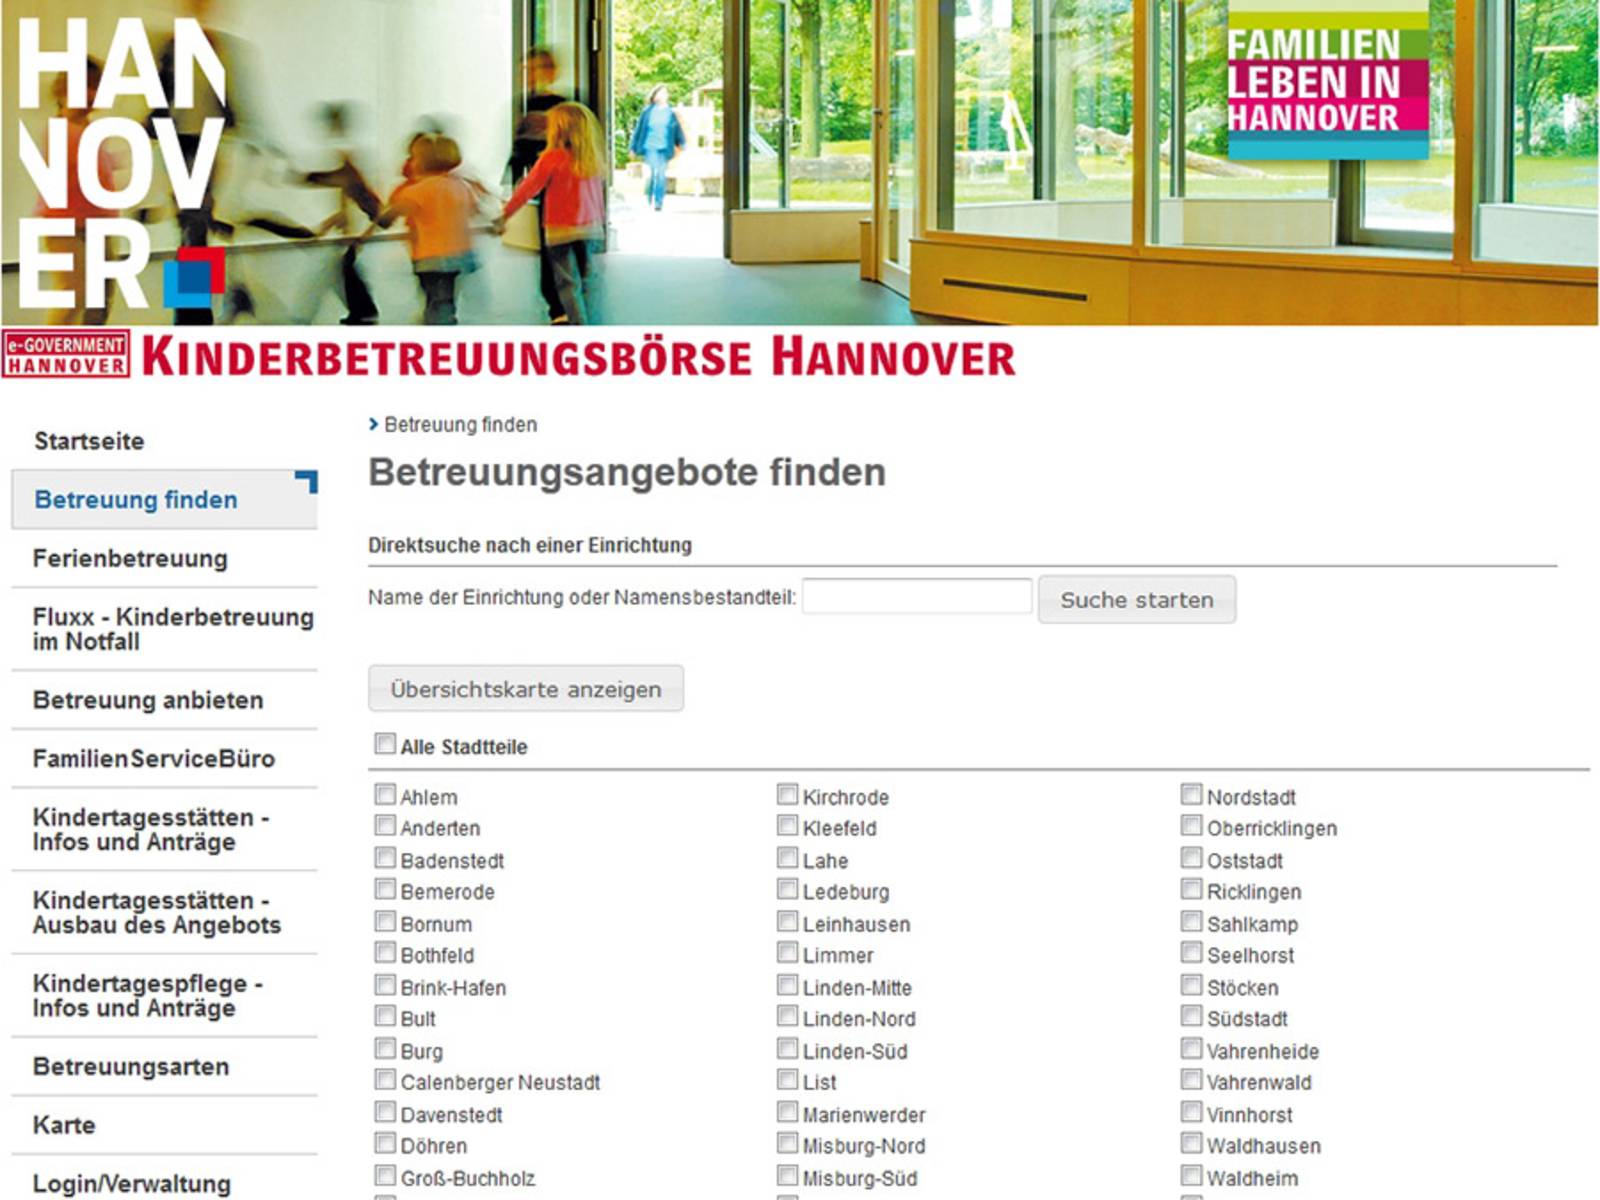 Vorschau auf den Internetauftritt der Kinderbetreuungsbörse Hannover